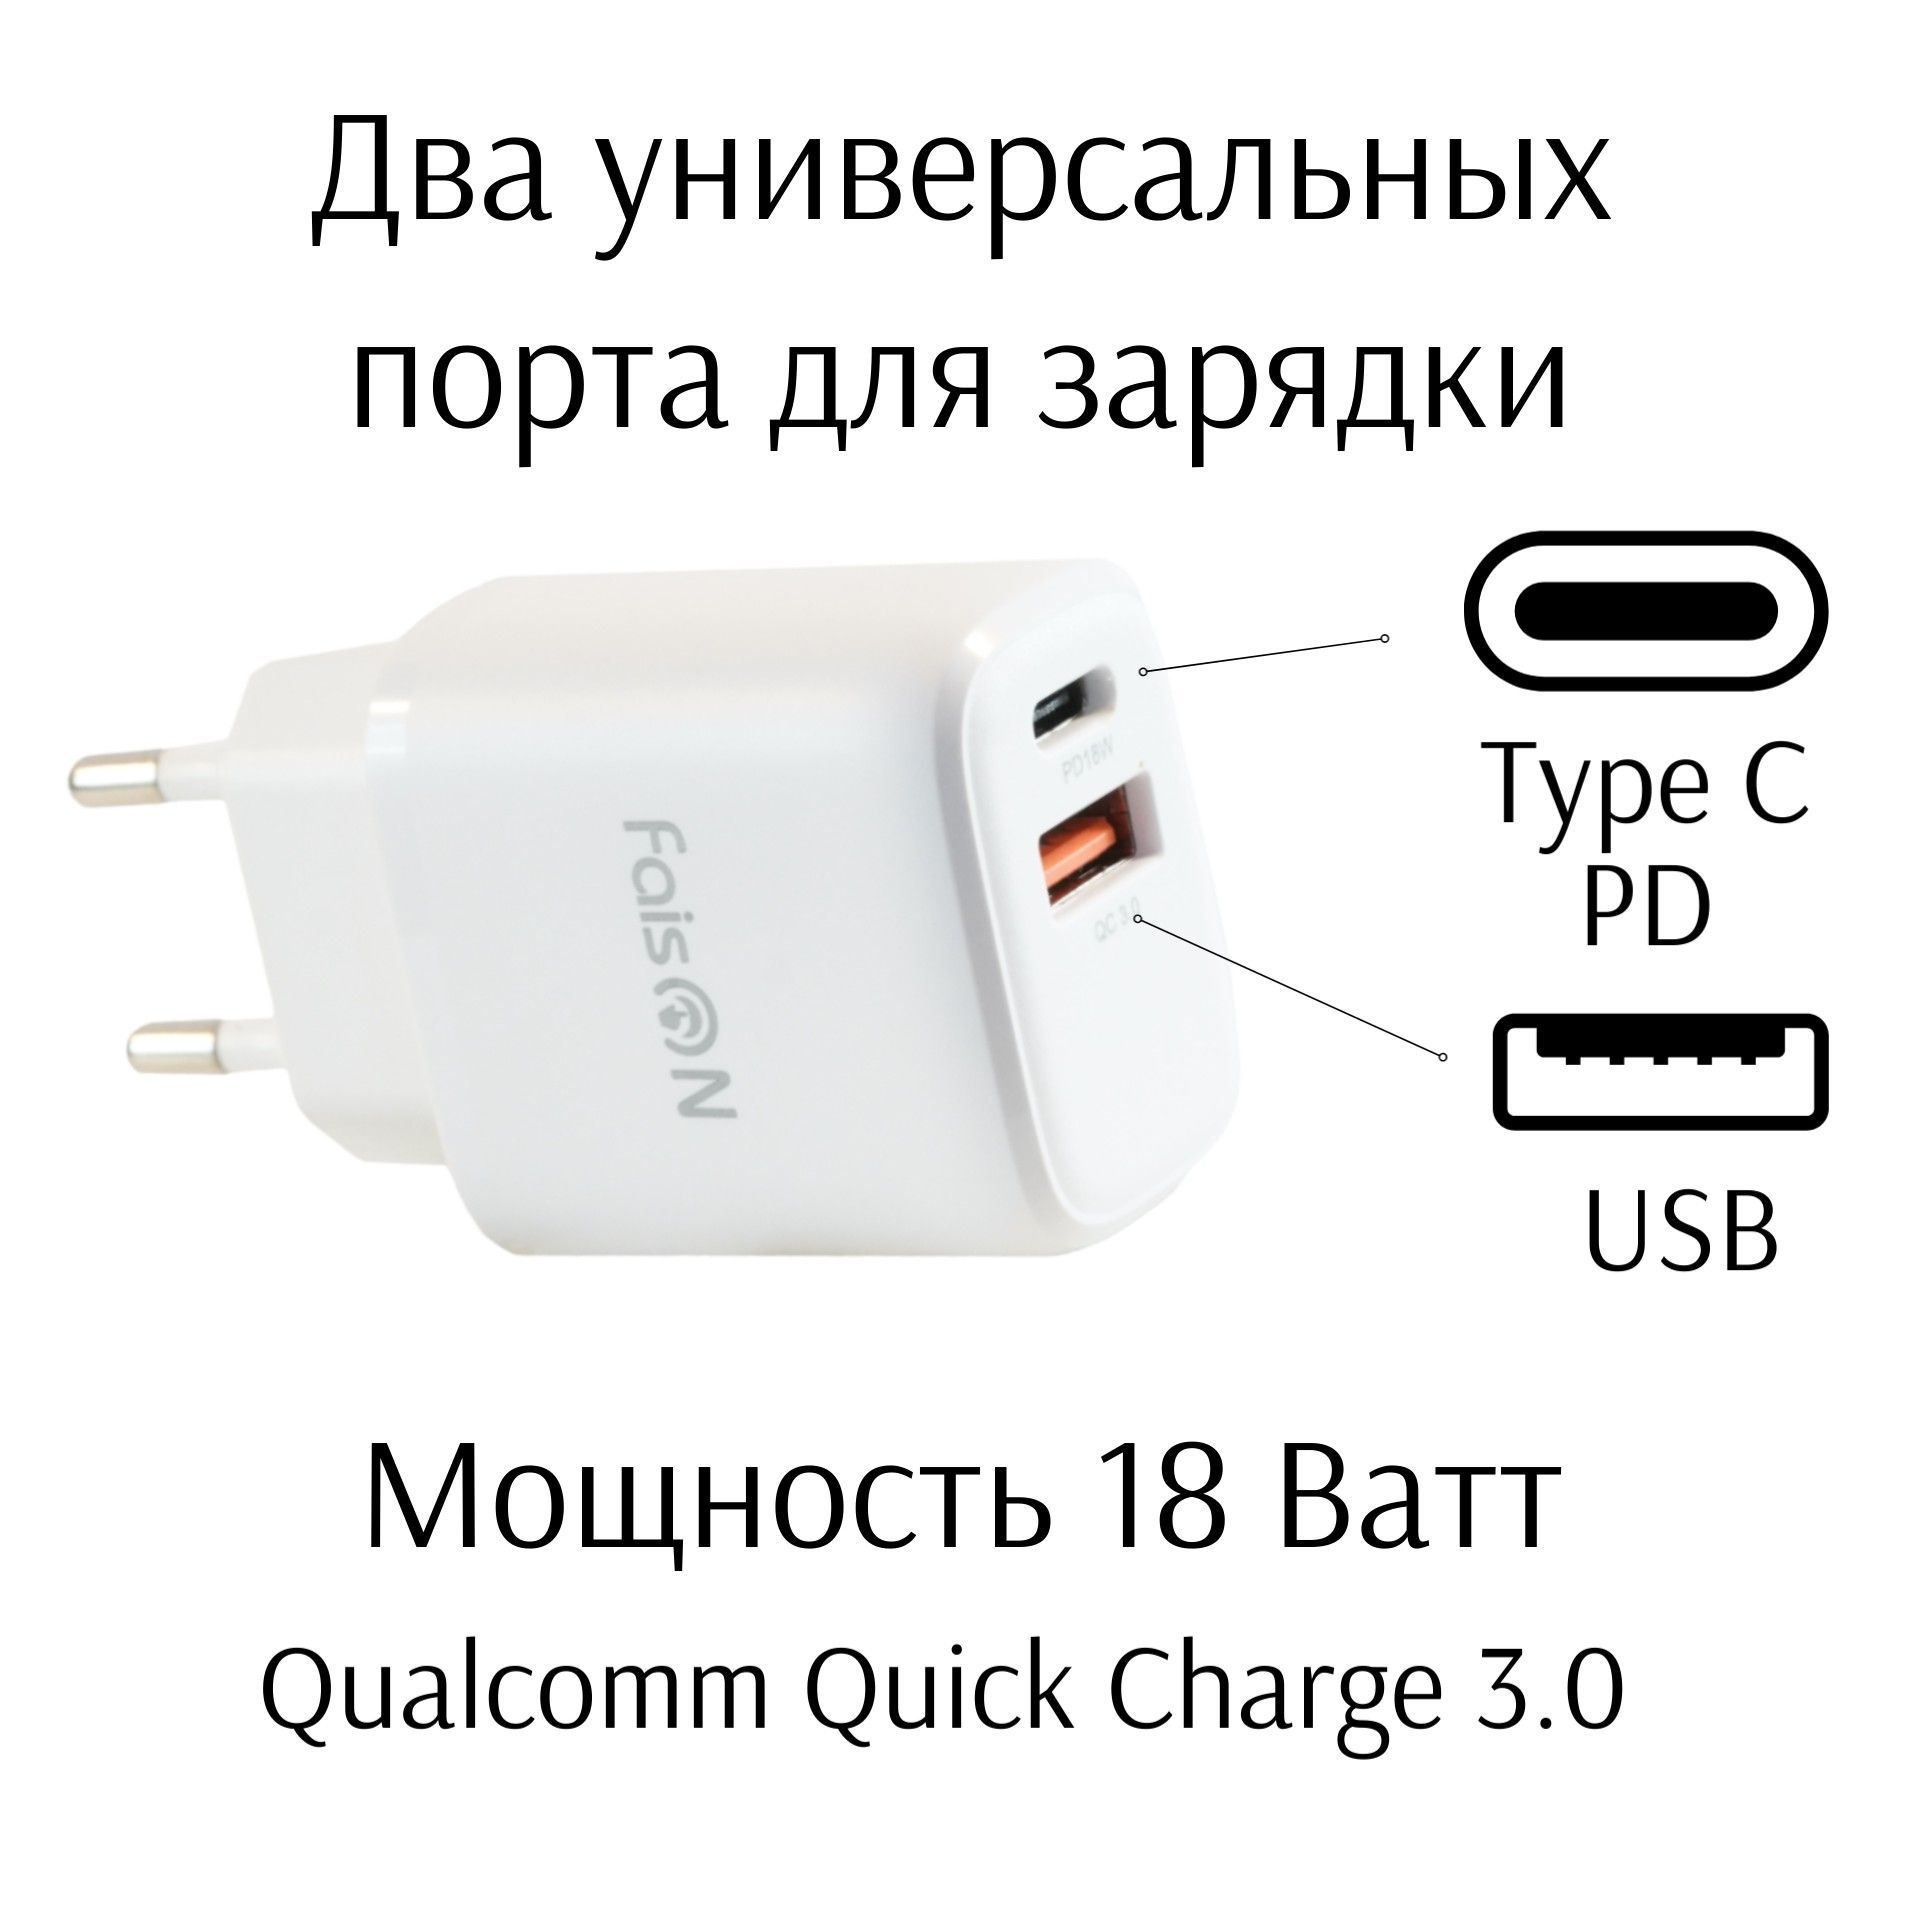 Pd 3.0 зарядное. Юсбт + Пд. USB PD. Купить капельки для быстрой зарядки Meizu Note 8 12 вольт 2 Ампера.